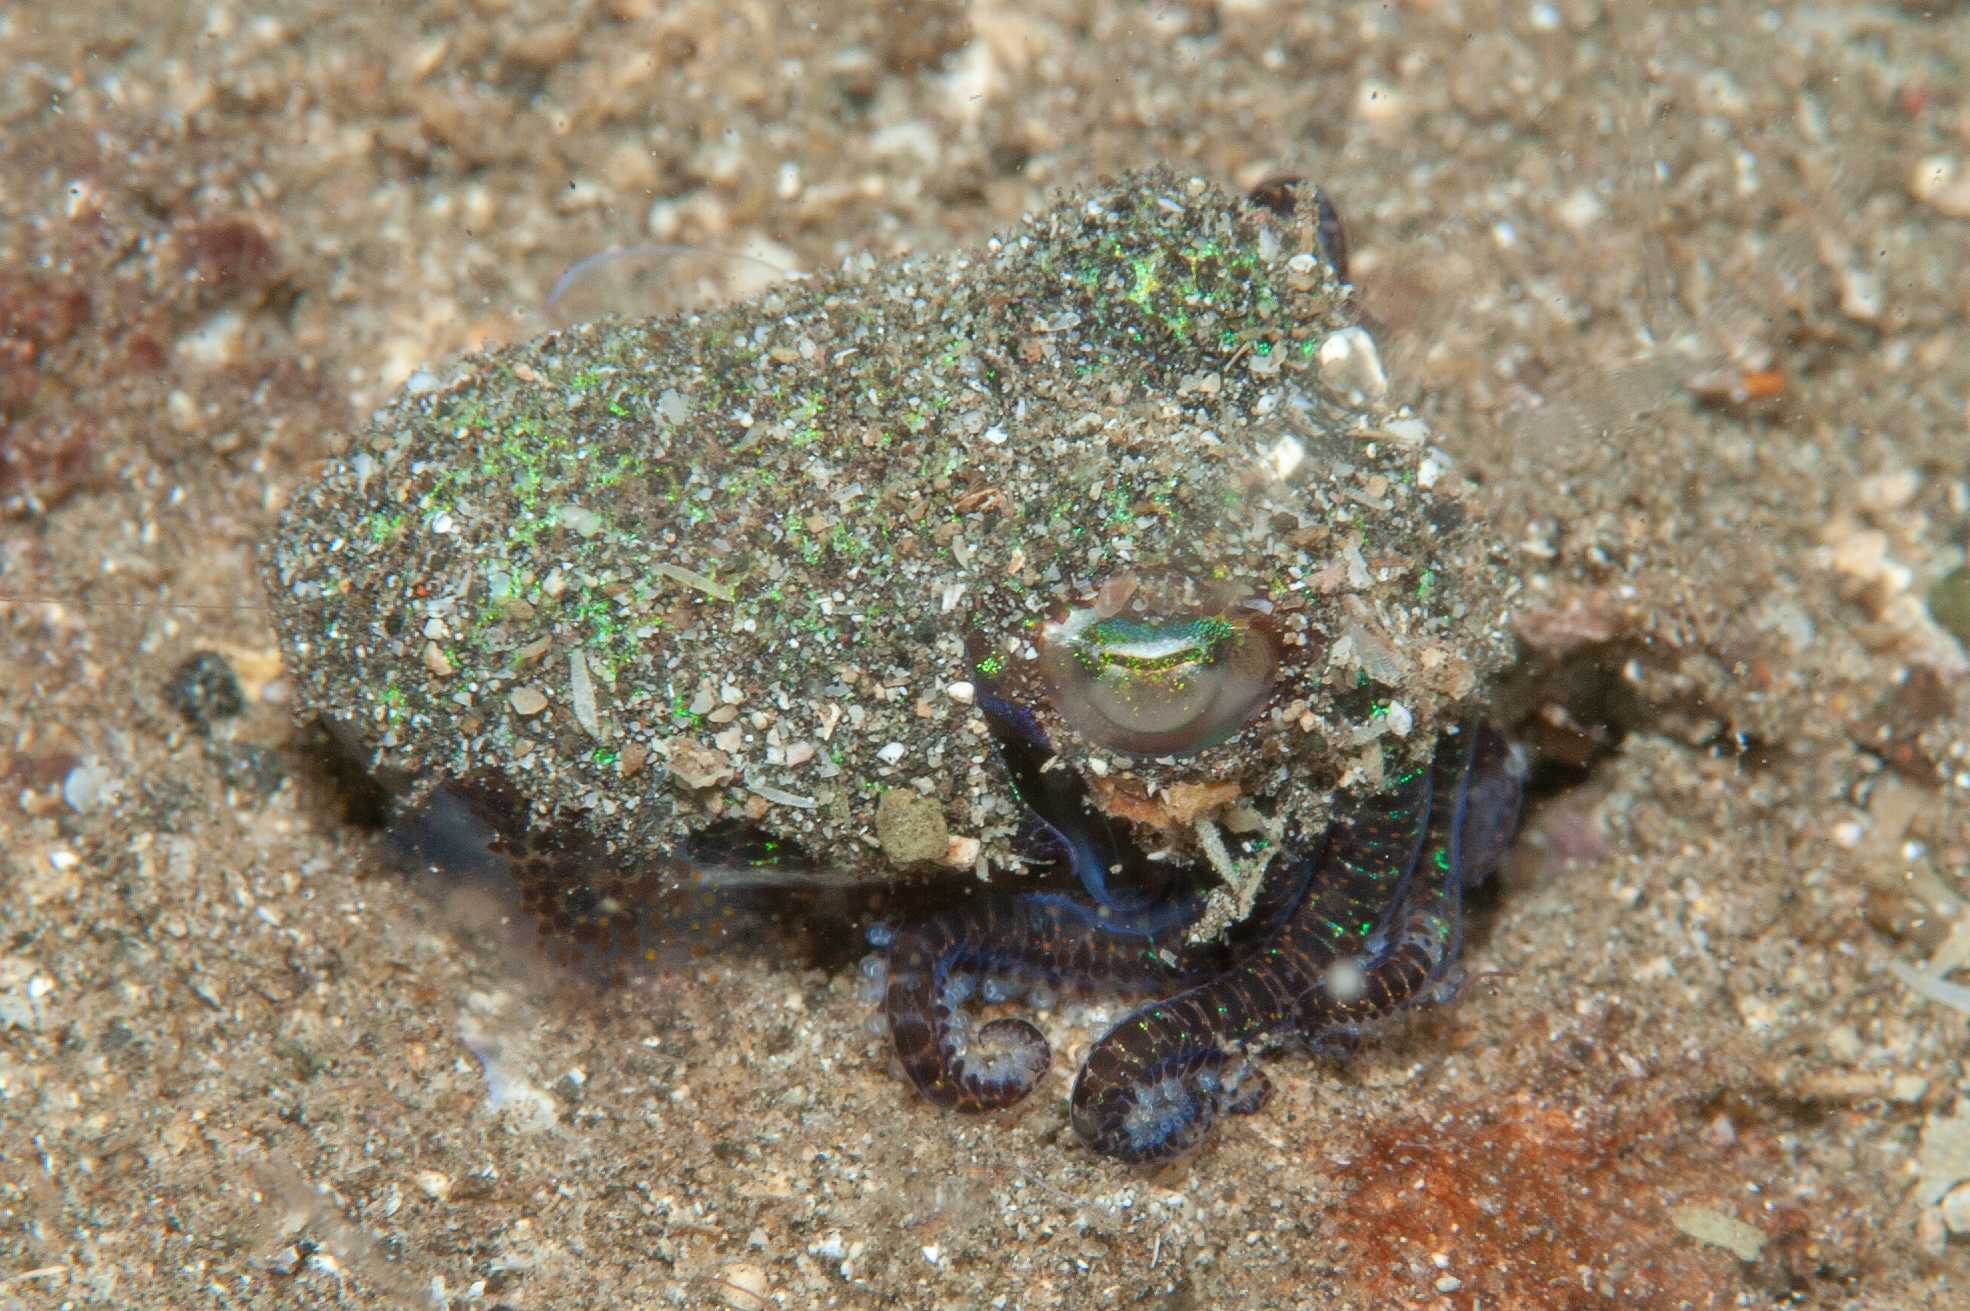 Bobtail squid - Euprymna berryi, The Crater, Witu Islands